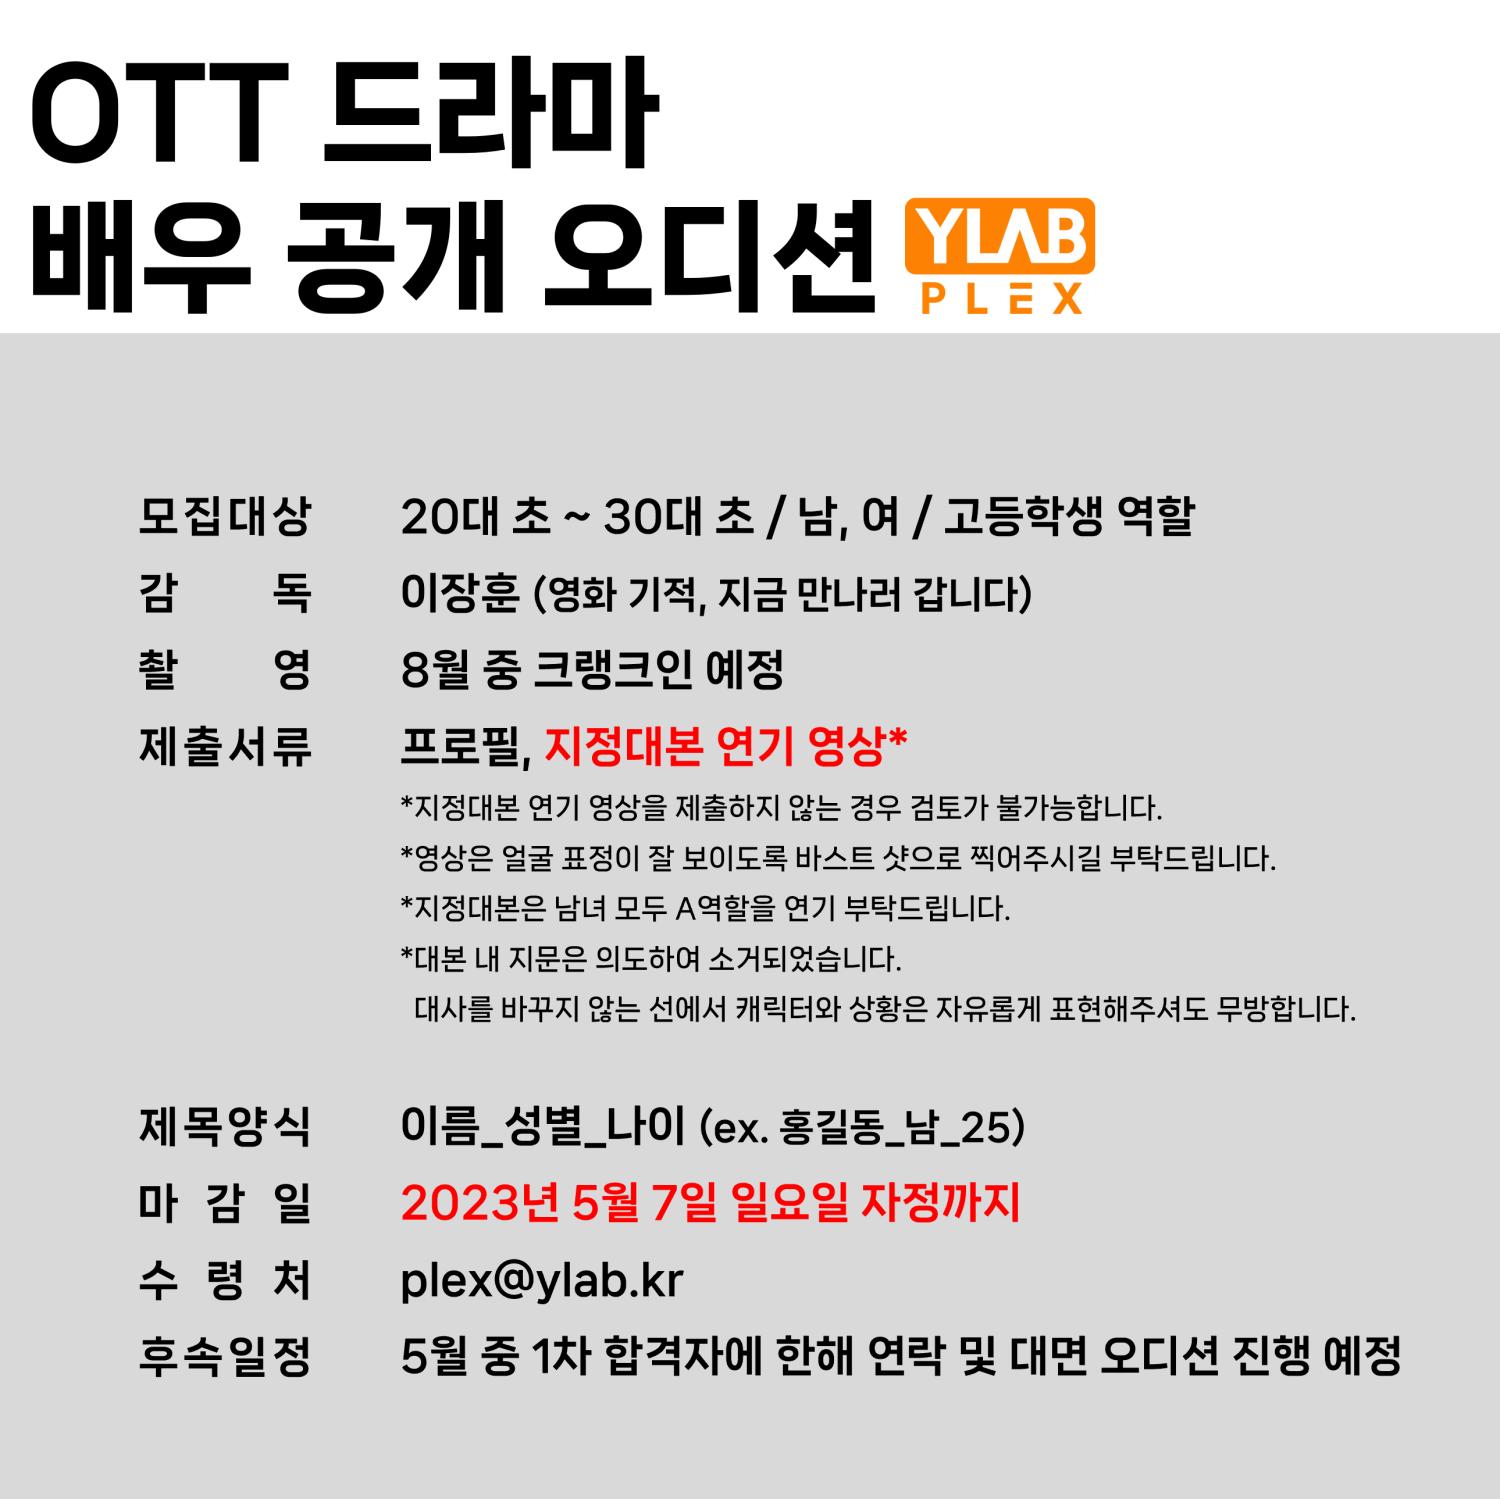 [공지] OTT 드라마 배우 공개 오디션_와이랩플렉스_230421.png.jpg